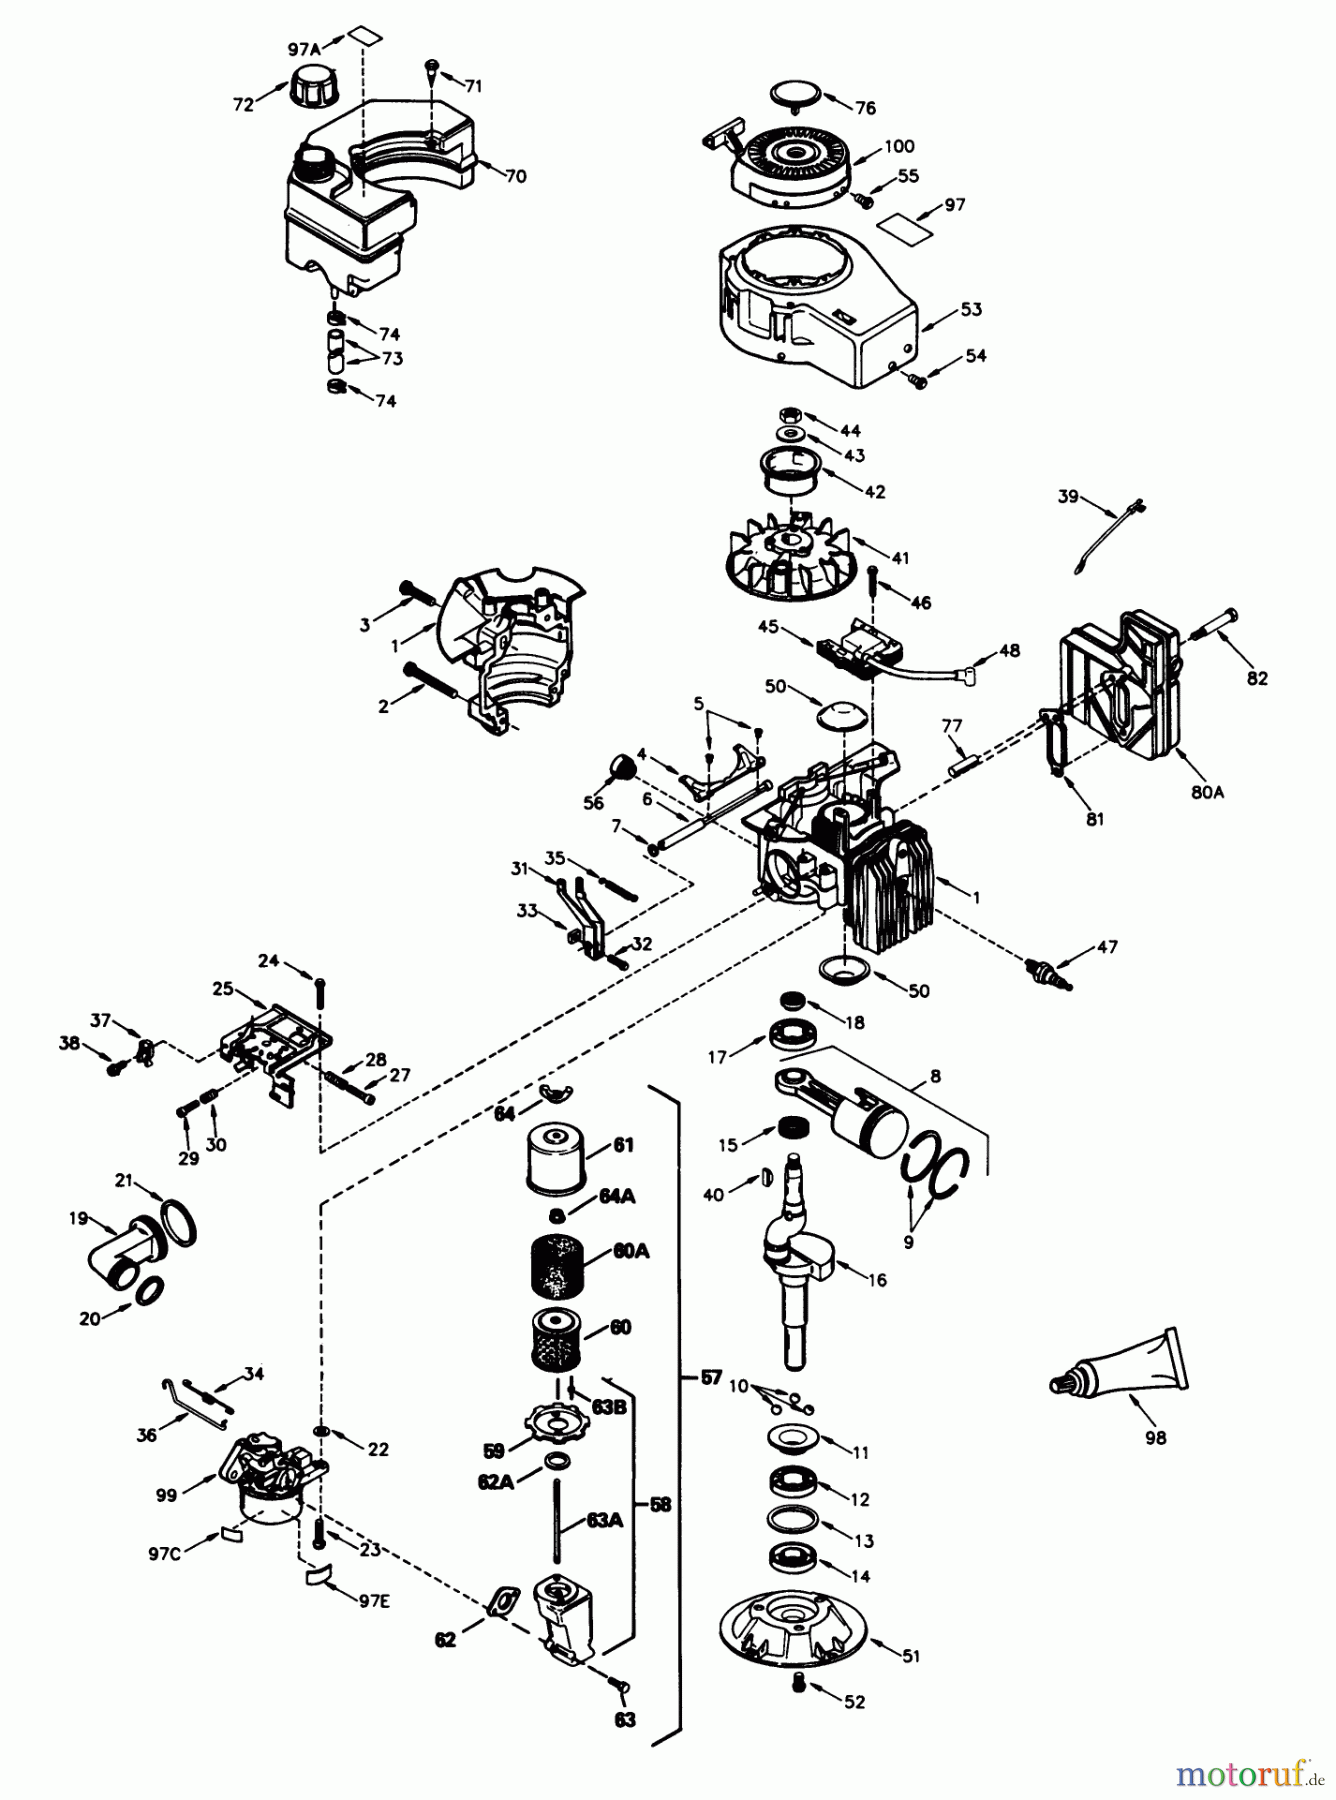  Toro Neu Mowers, Walk-Behind Seite 2 26651 - Toro Lawnmower, 1989 (9000001-9999999) ENGINE TECUMSEH MODEL NO. TVS840-8014B